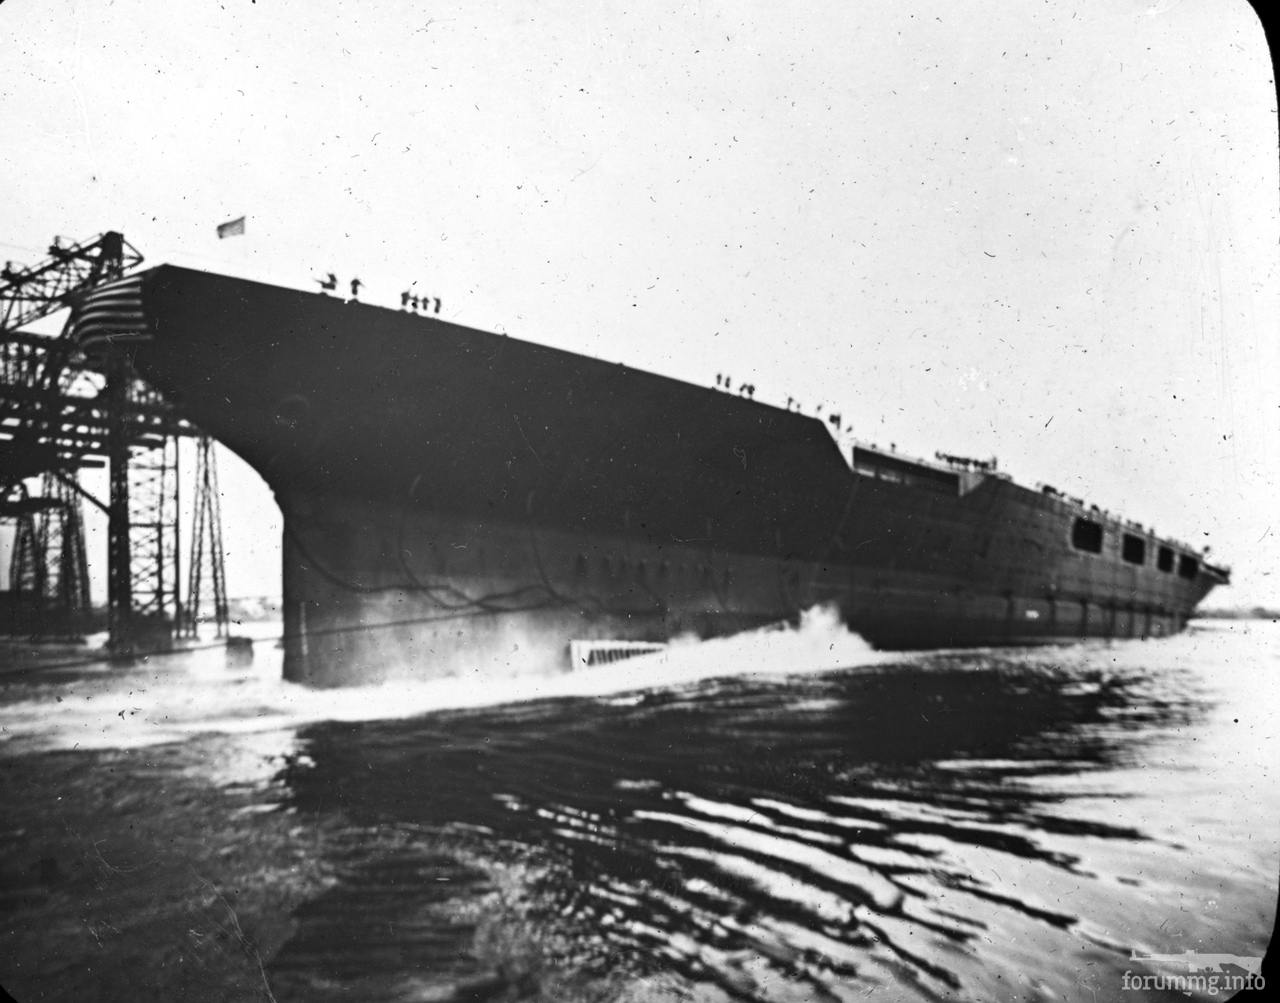 139400 - Спуск на воду USS Lexington (CV-2), 3 октября 1925 г.